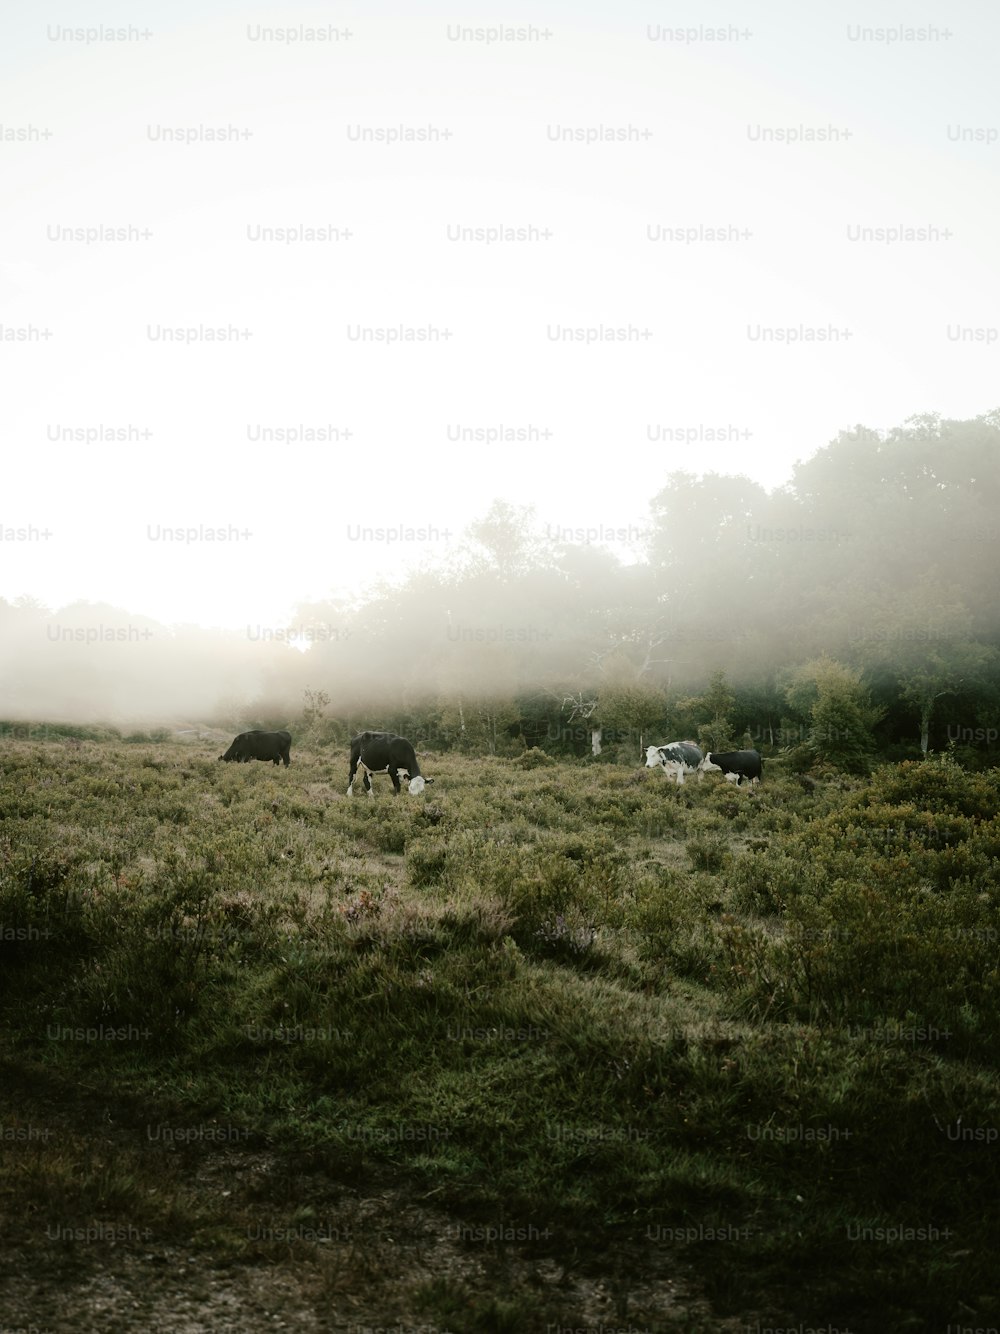 una mandria di bovini al pascolo su un rigoglioso campo verde